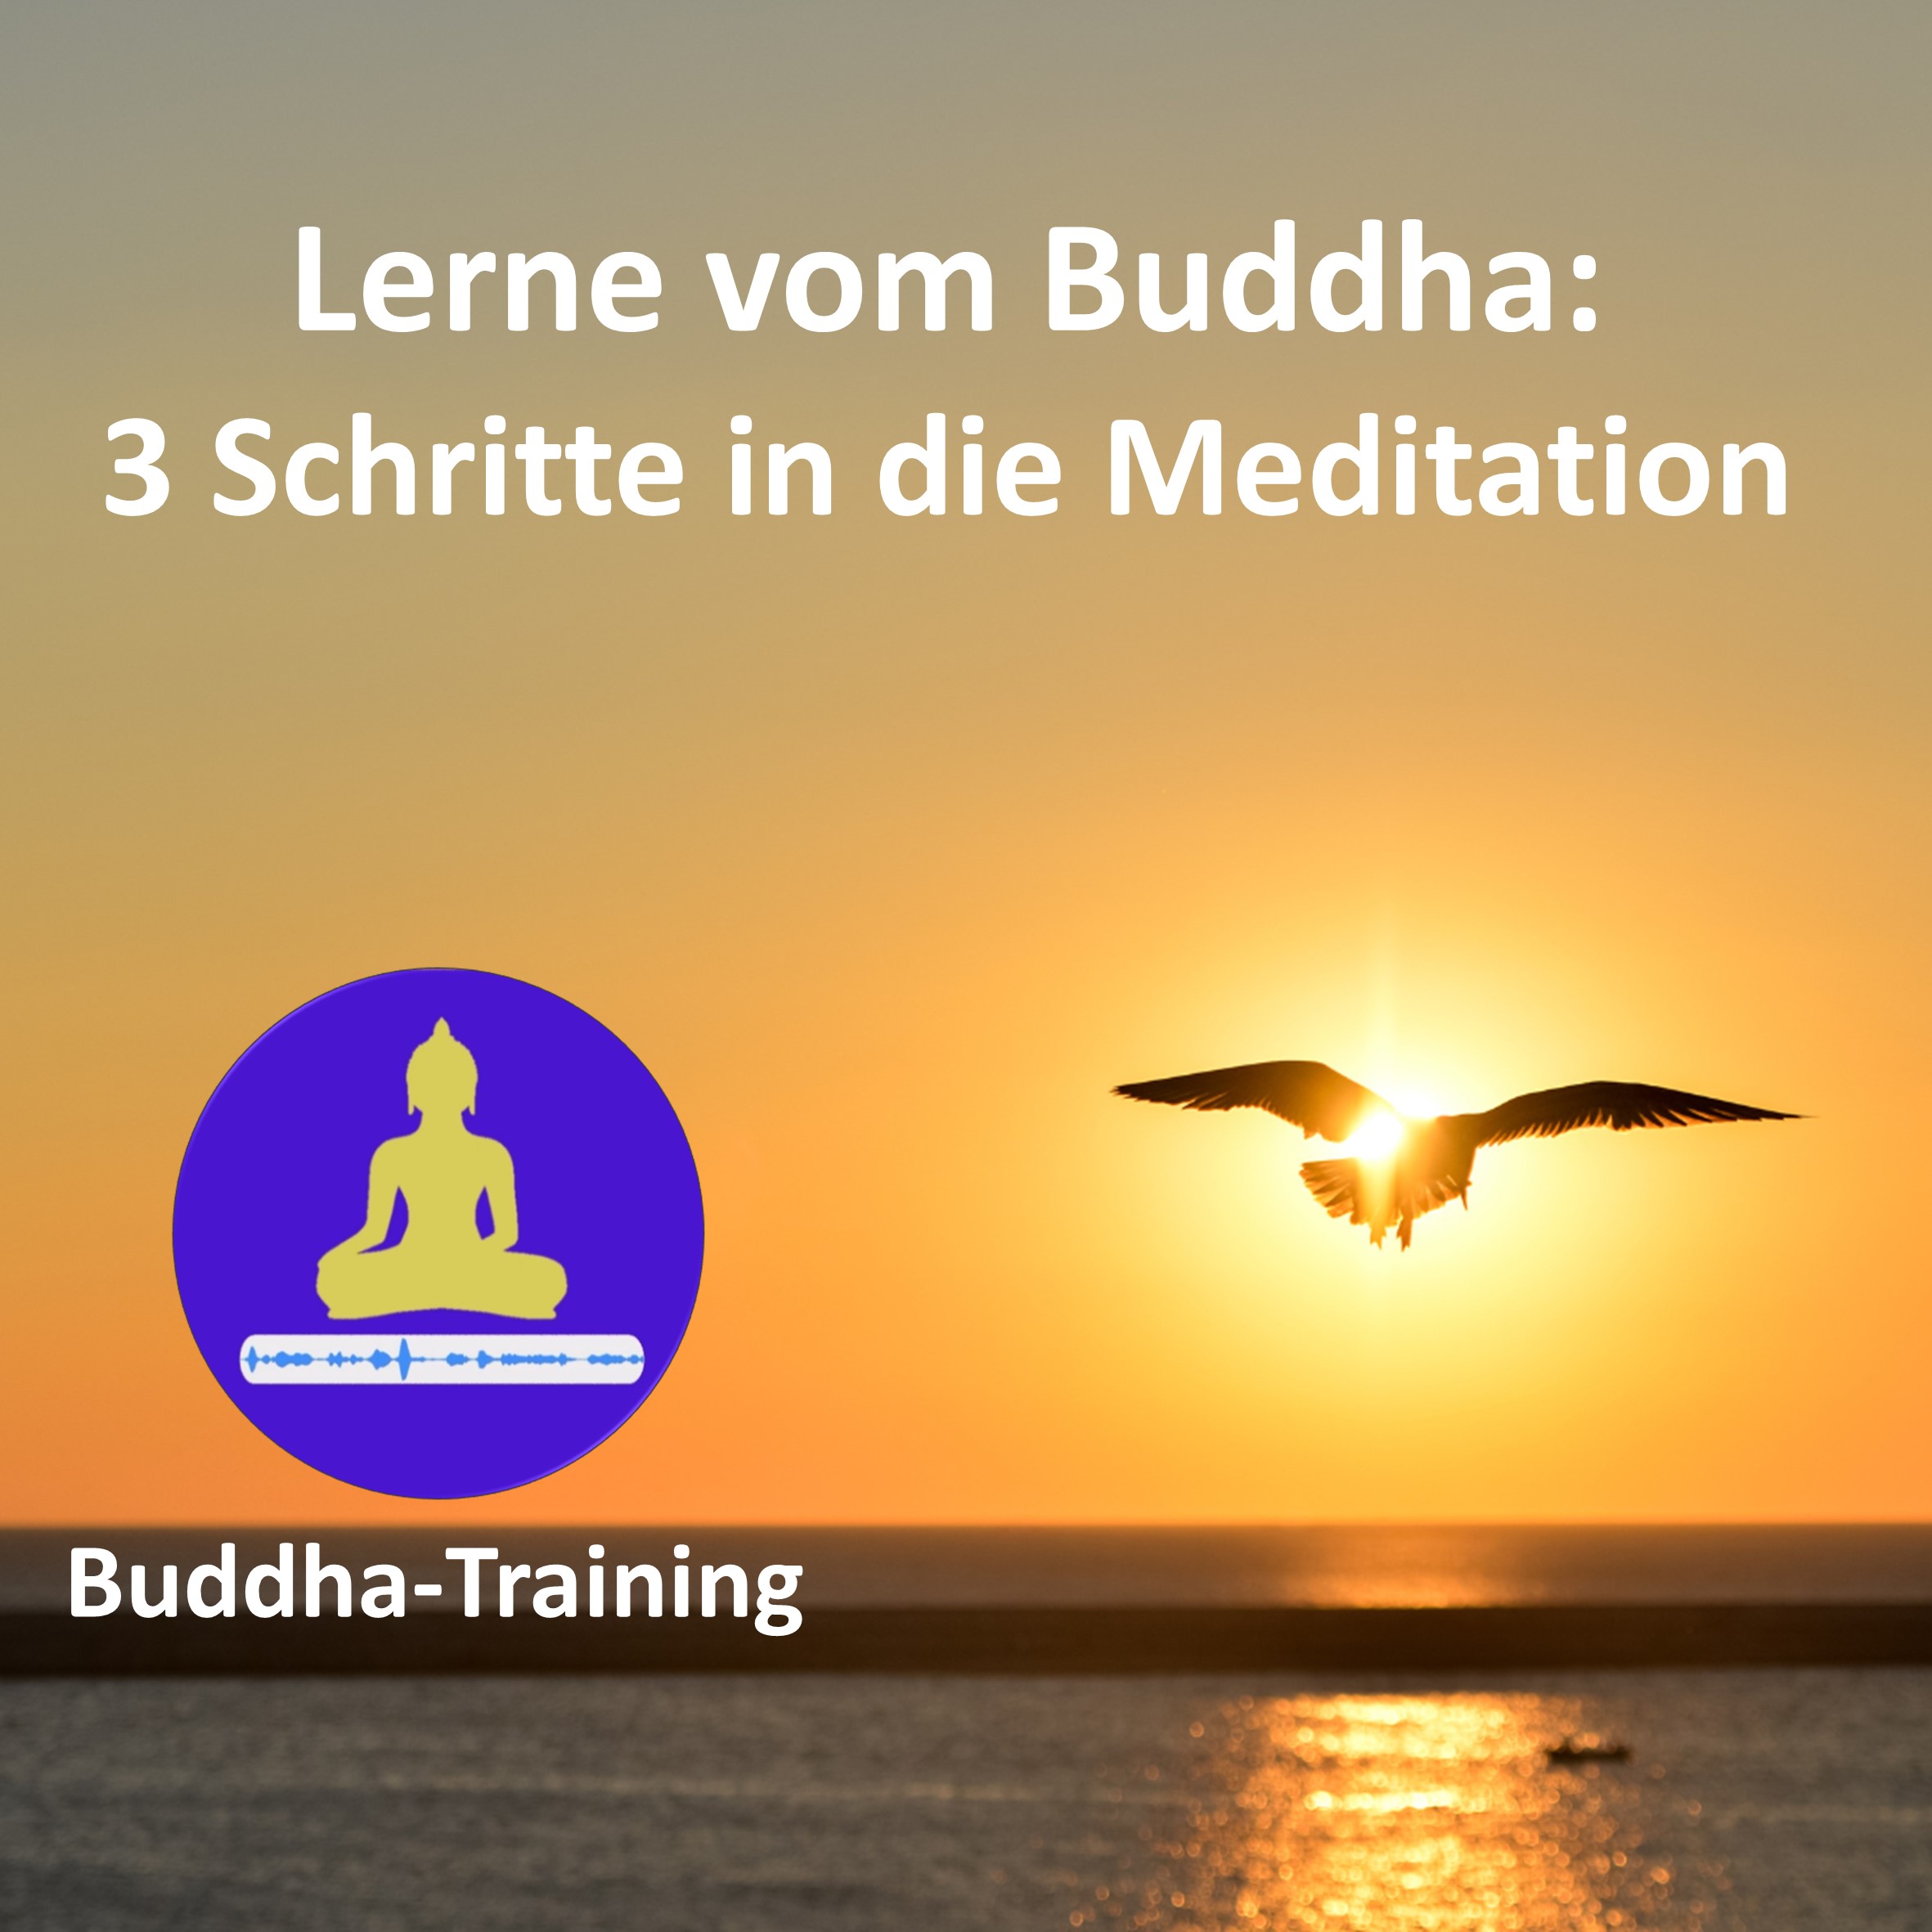 17. Lerne vom Buddha: 3 Schritte in die Meditation